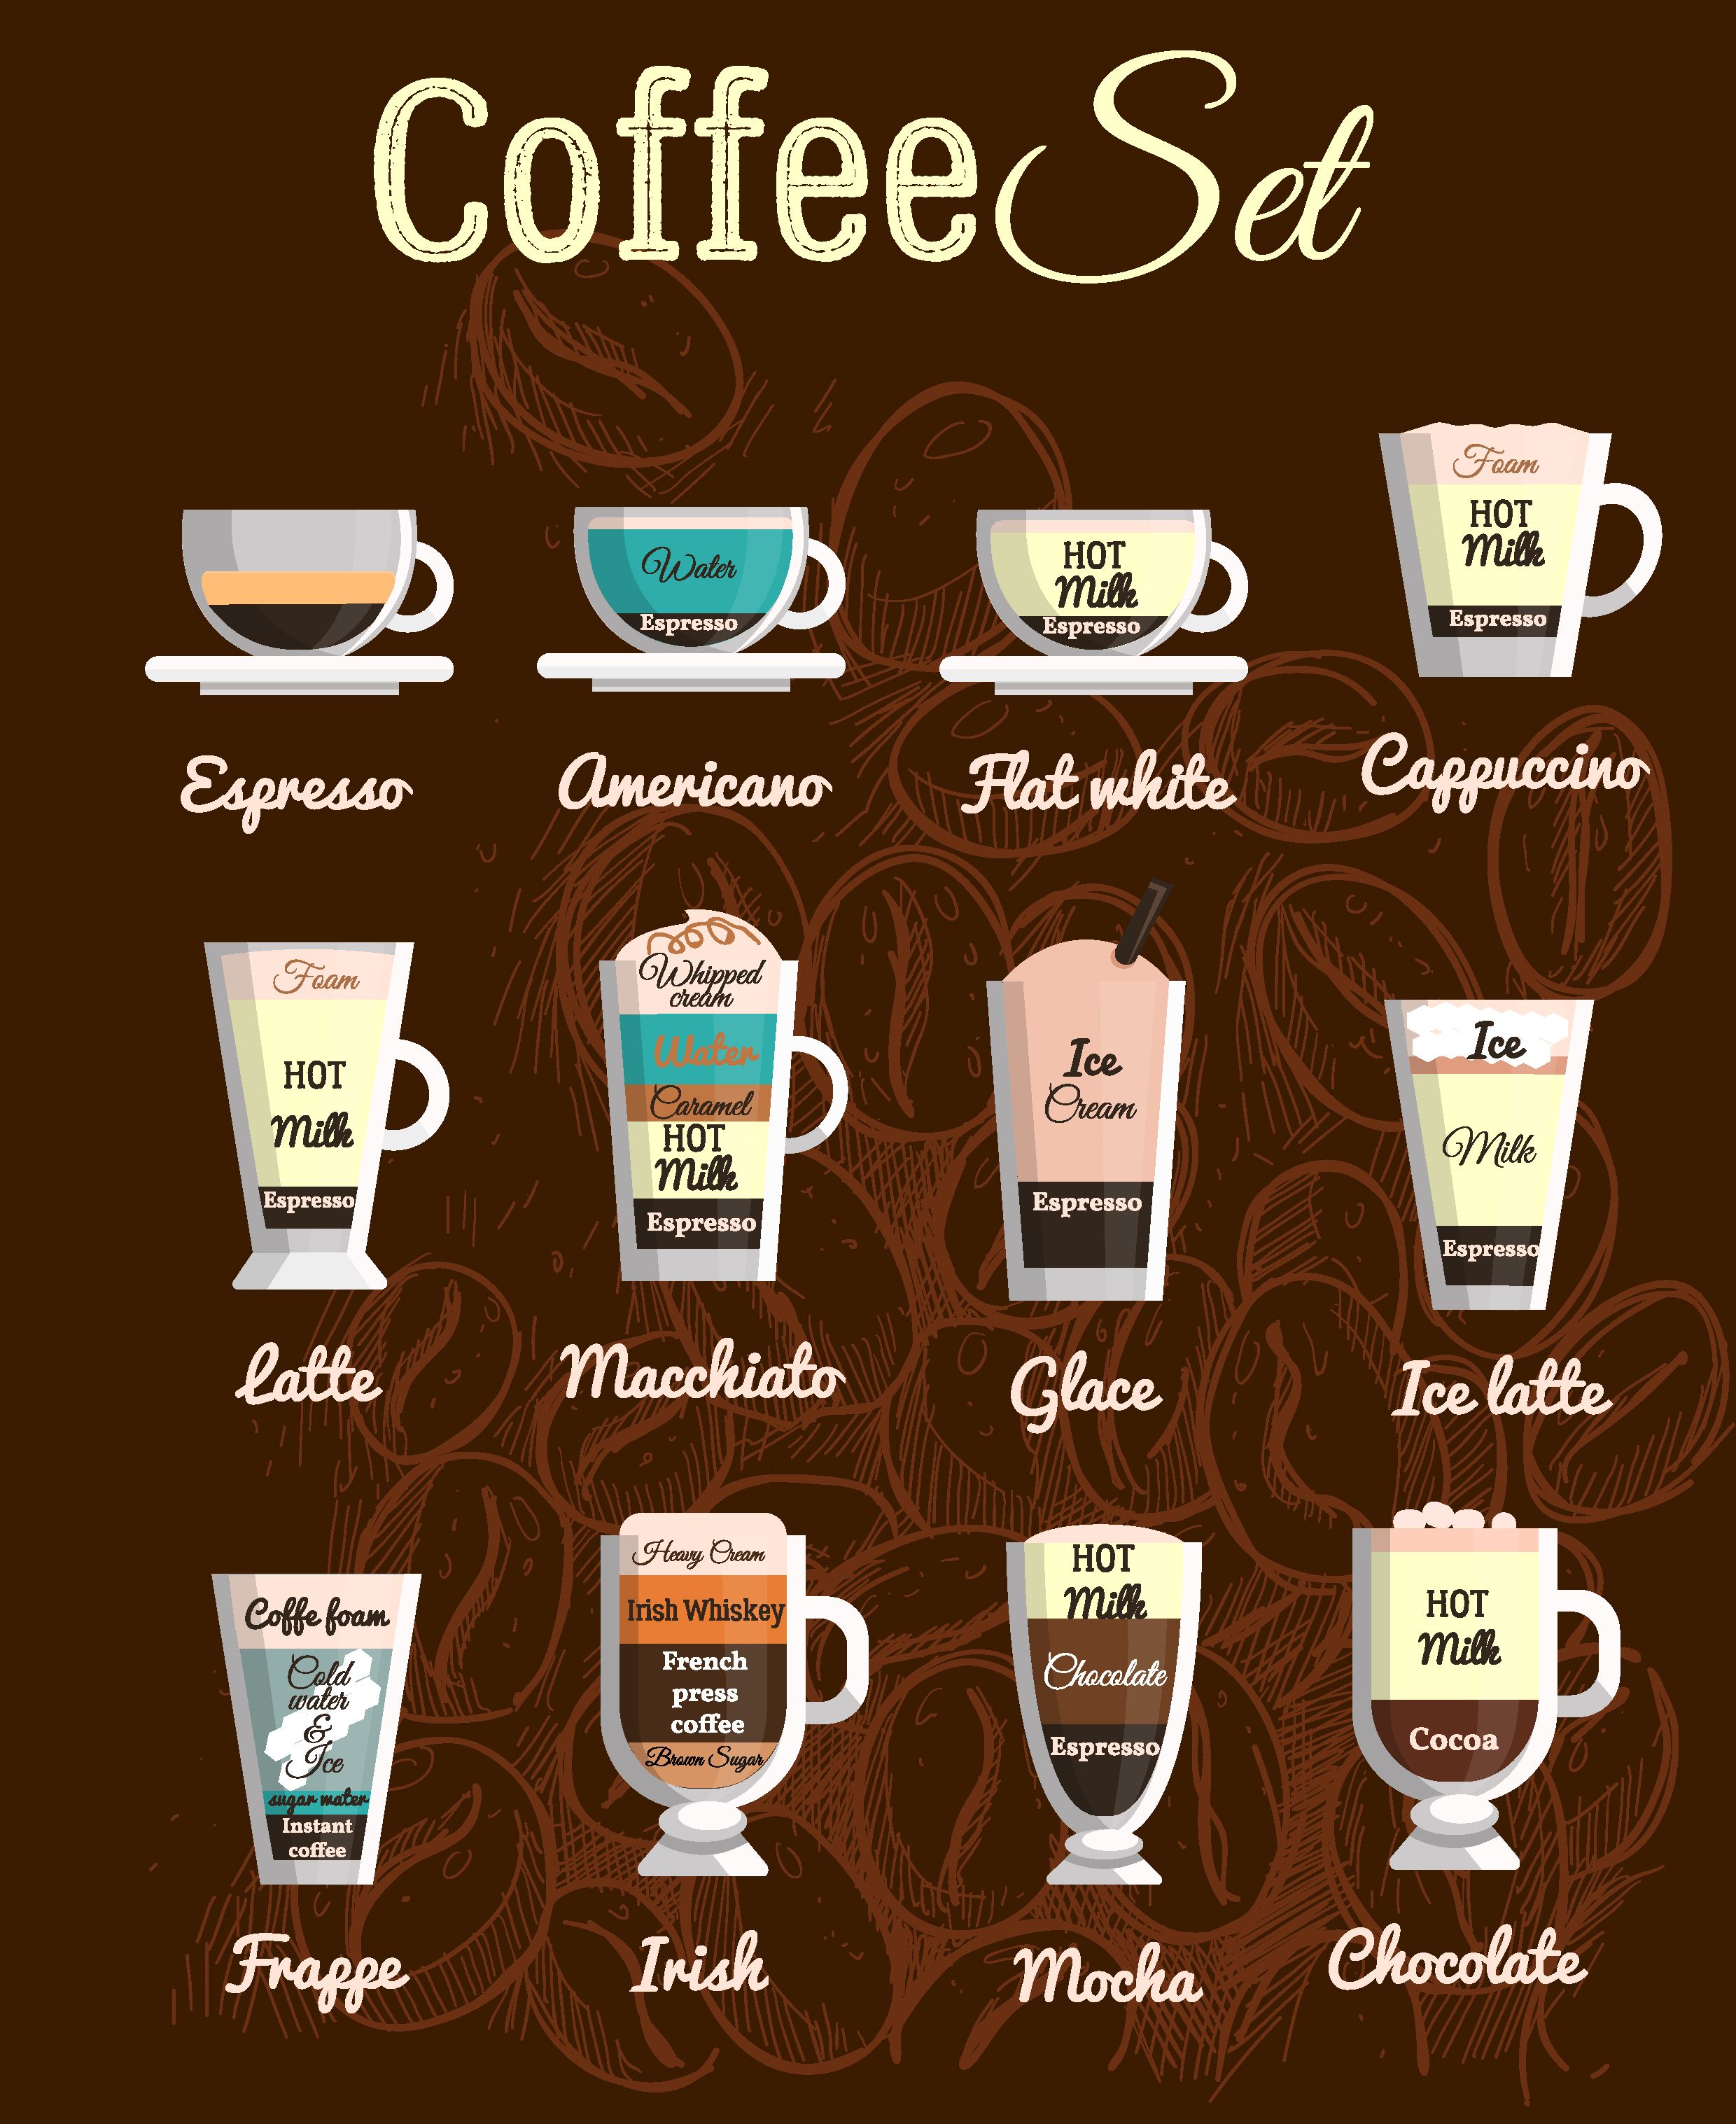 Кофе виды и названия фото